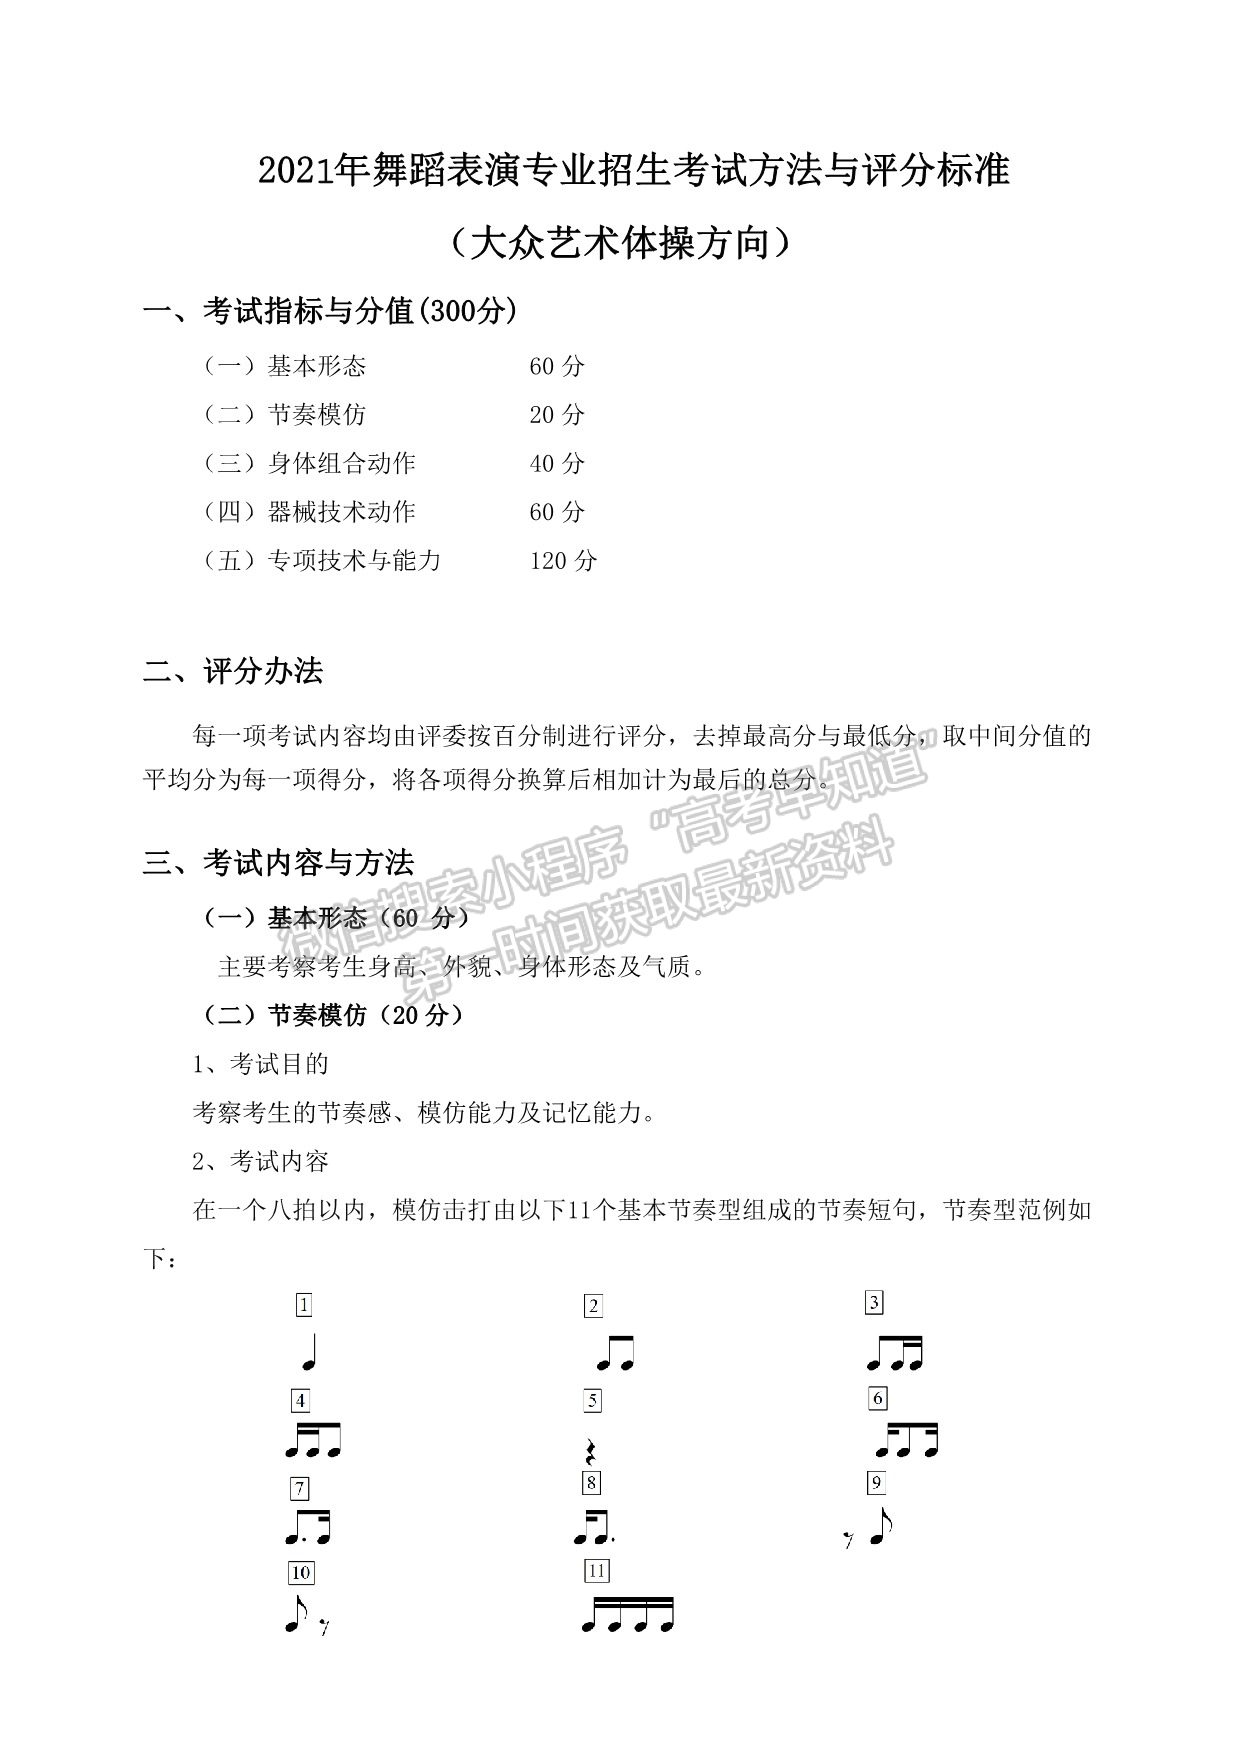 武汉体育学院2021年舞蹈表演专业招生考试方法与评分标准（大众艺术体操方向）